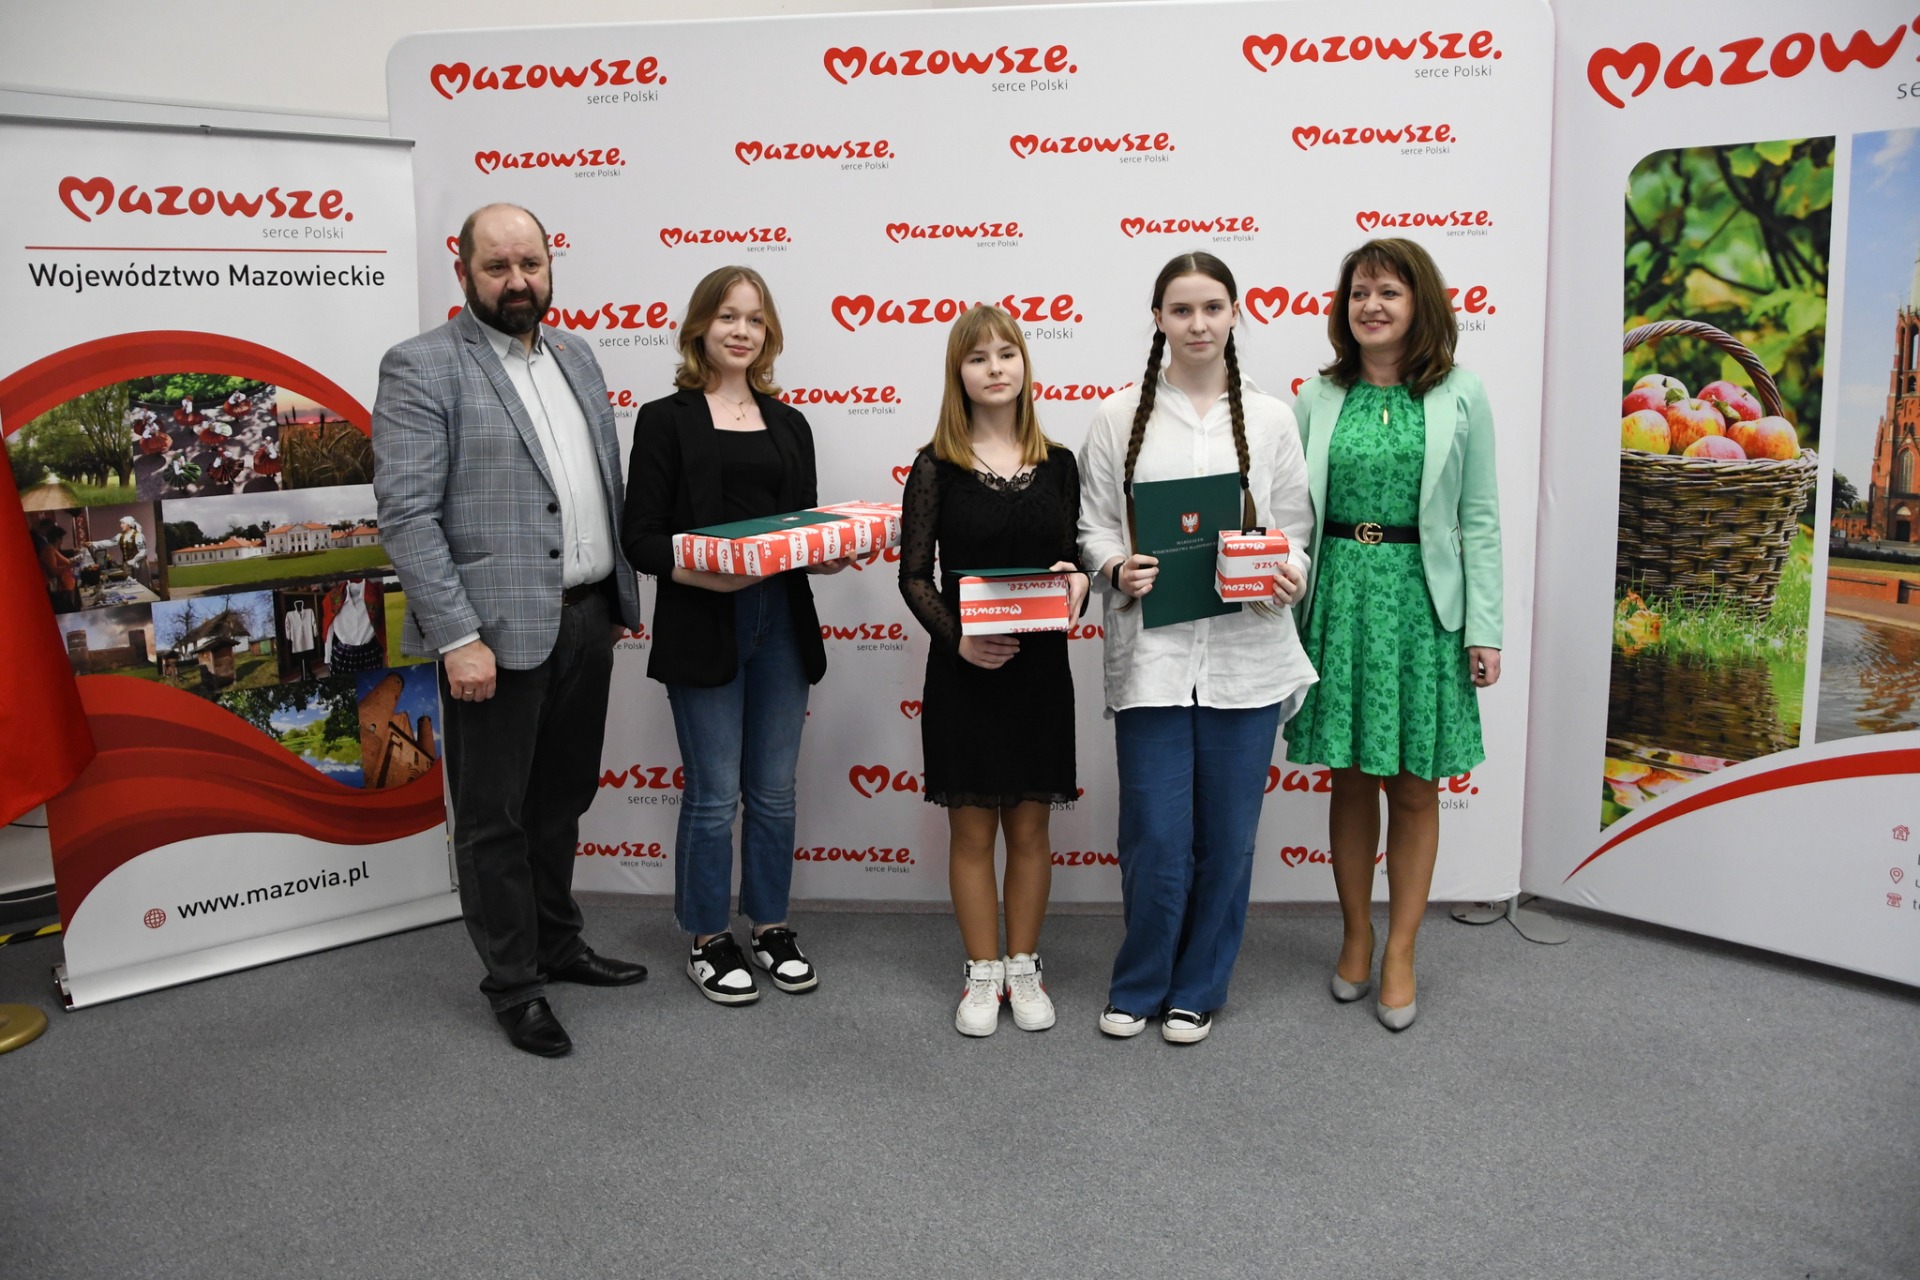 Laureaci konkursu wraz z organizatorami na tle ścianki z napisem "Mazowsze - serce Polski"